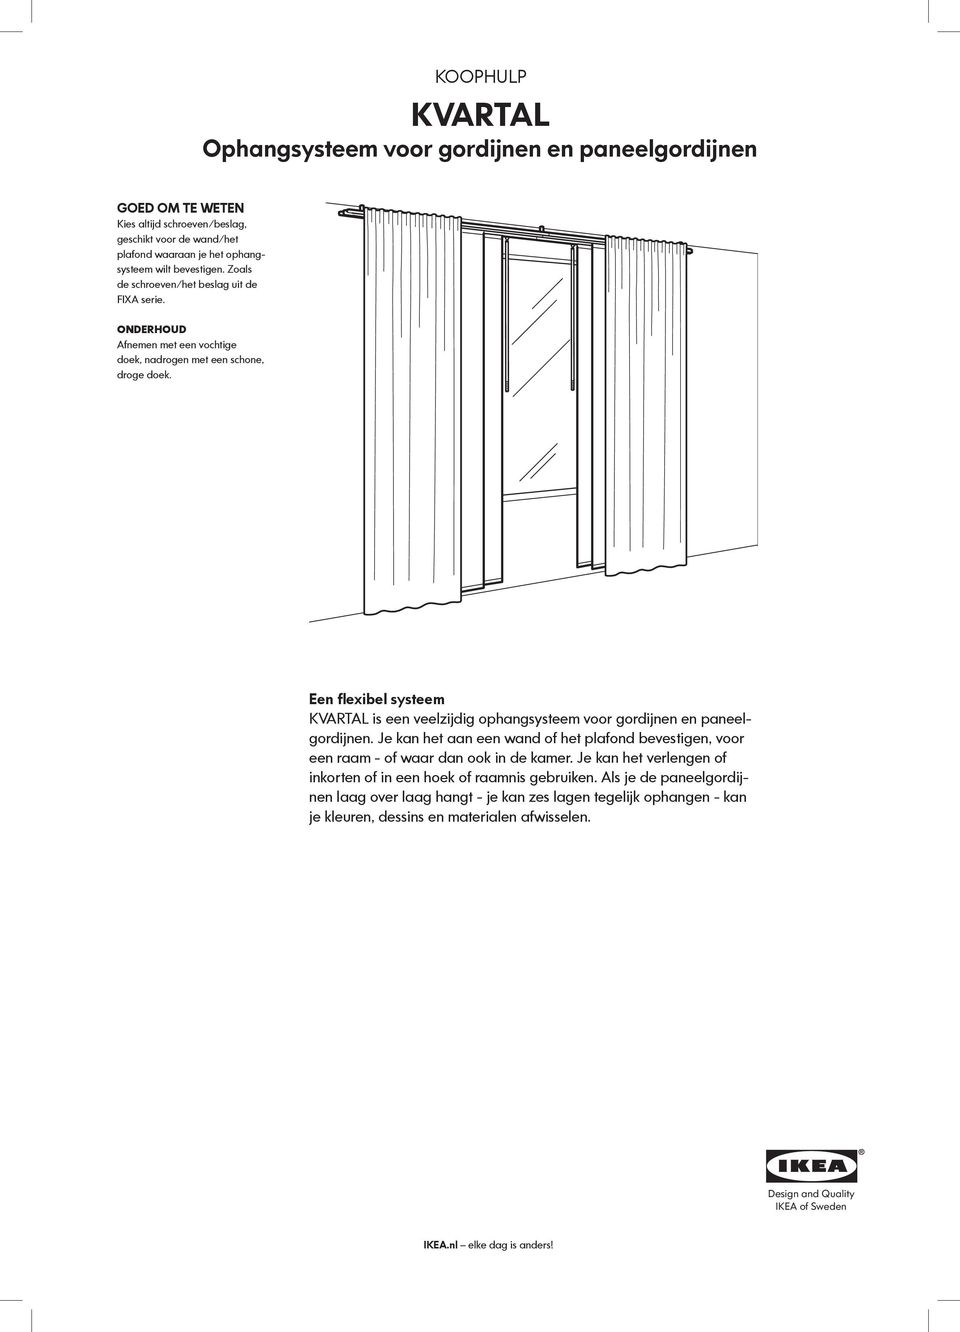 Een flexibel systeem KVARTAL is een veelzijdig ophangsysteem voor gordijnen en paneelgordijnen. Je kan het aan een wand of het plafond bevestigen, voor een raam - of waar dan ook in de kamer.